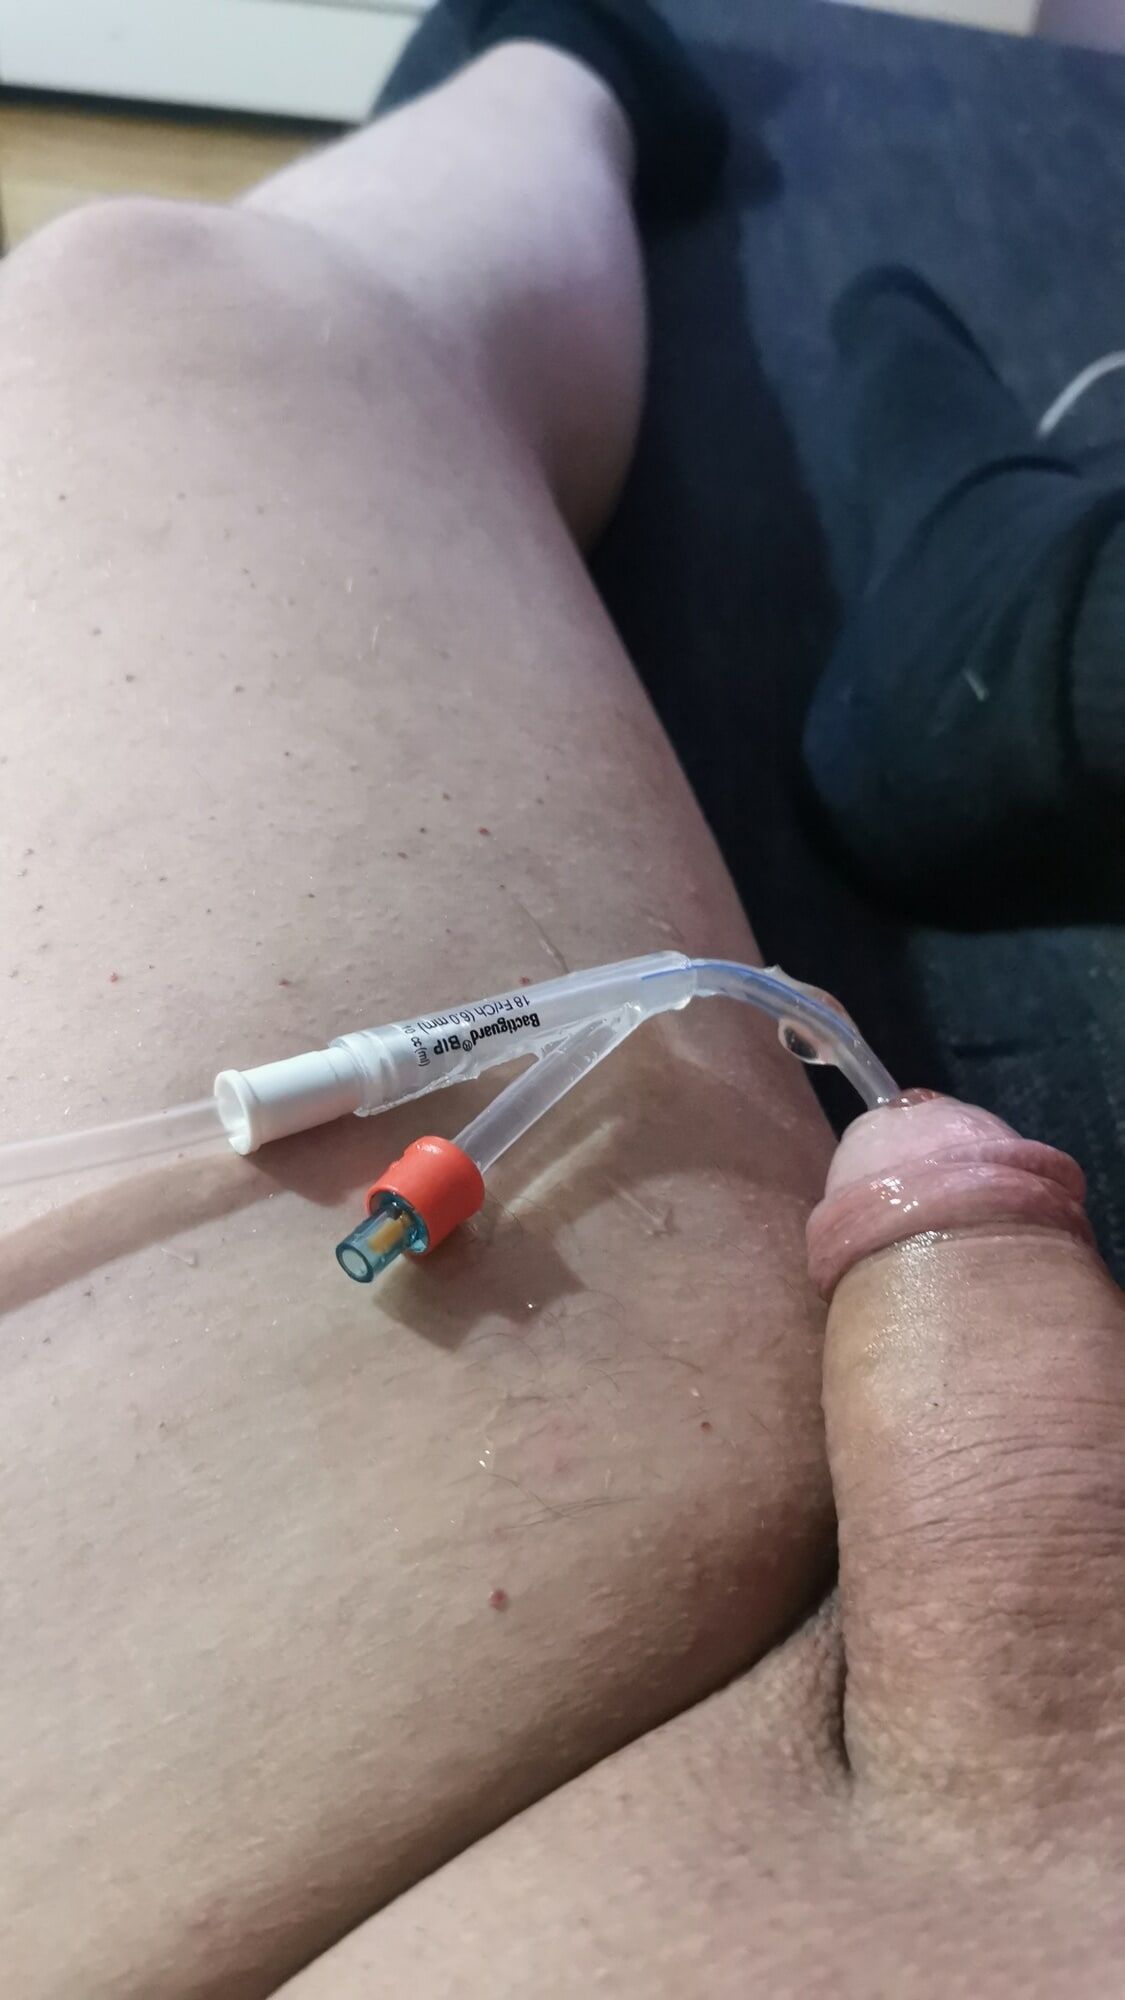 My catheter #9